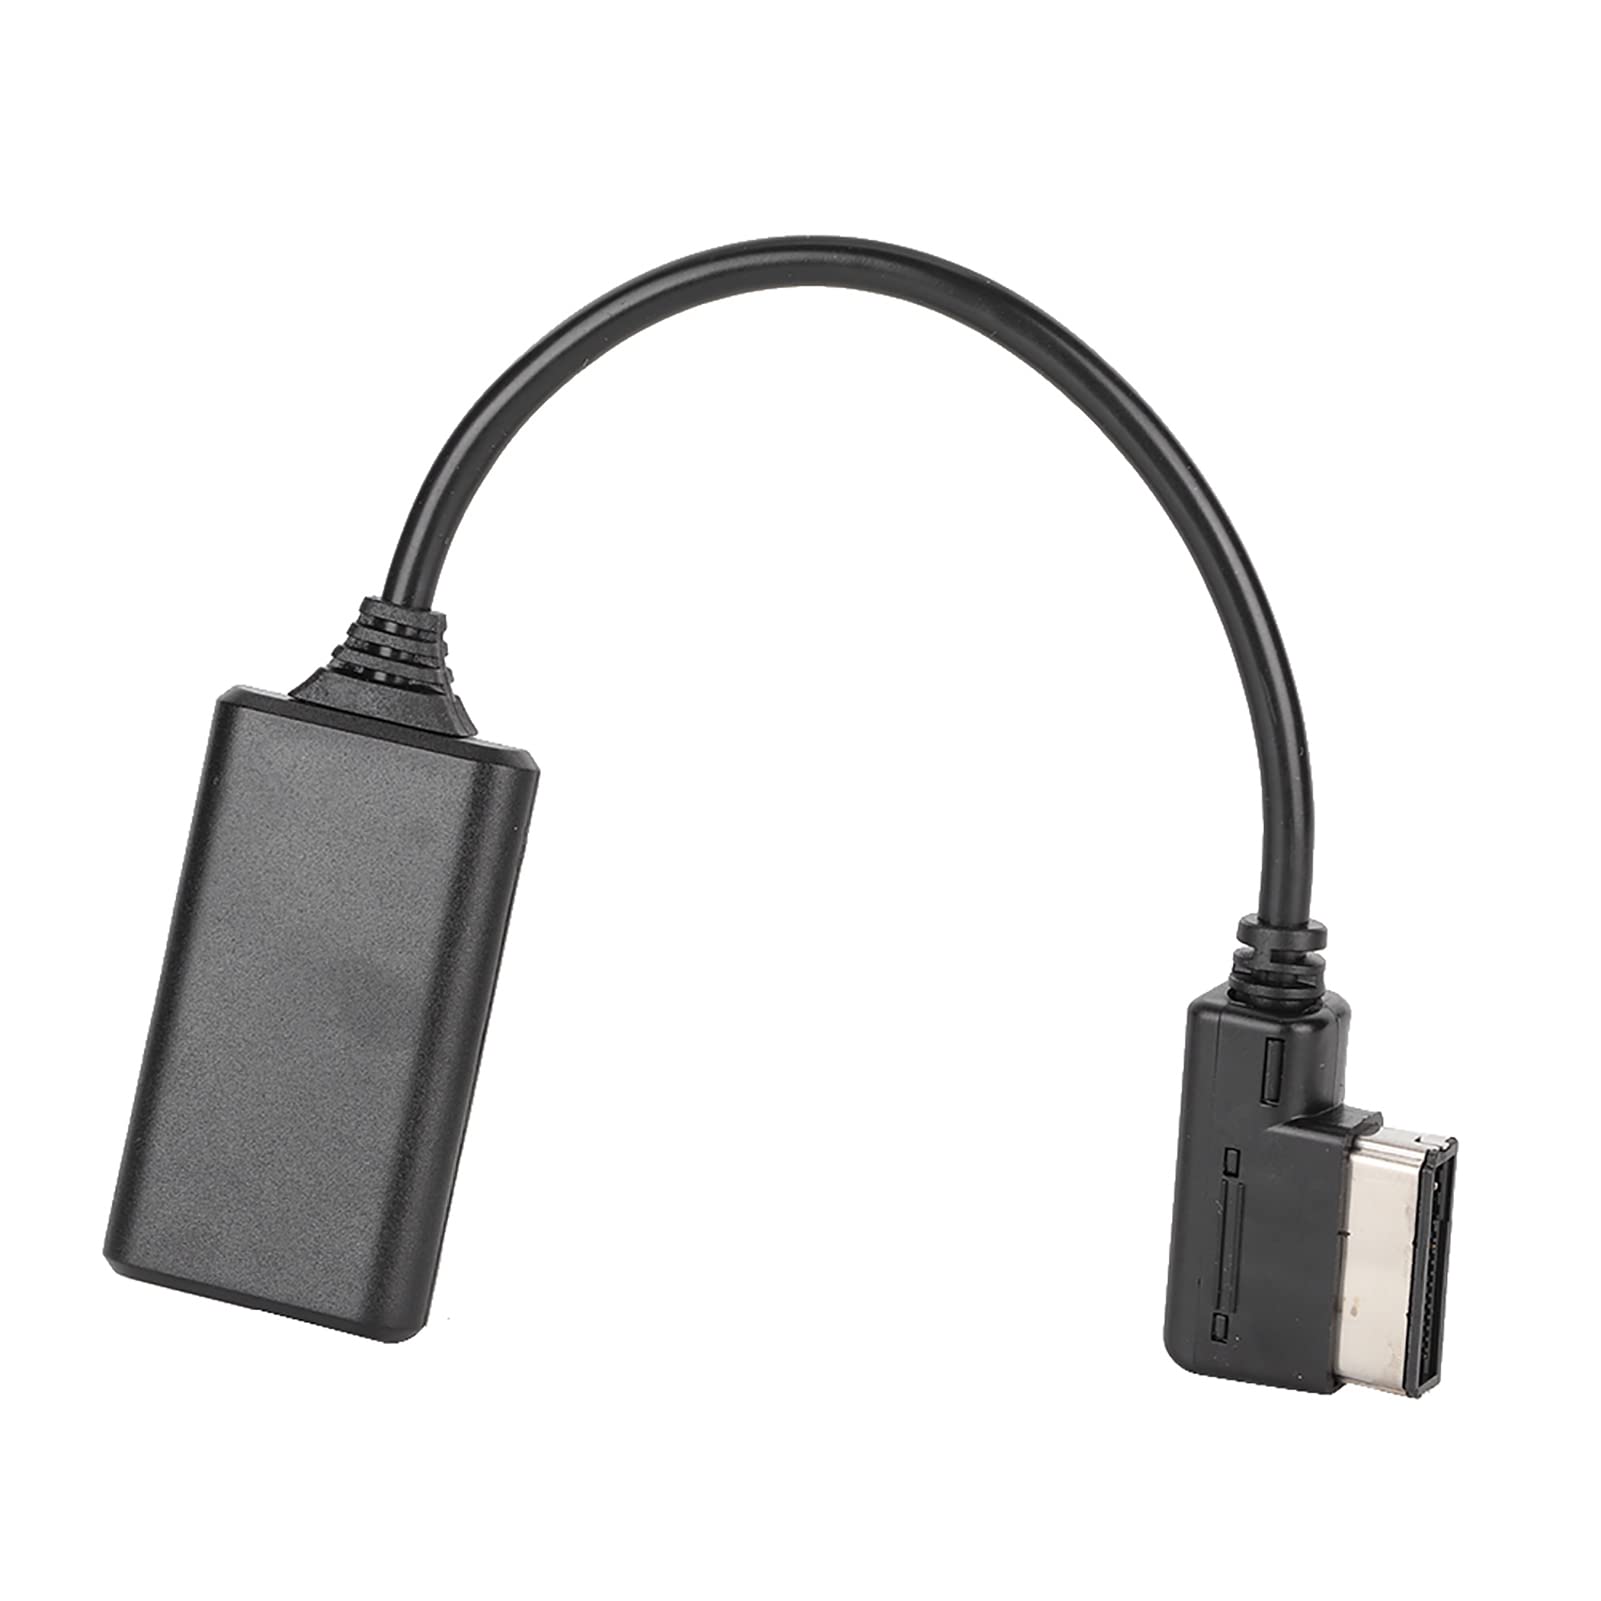 Auto AUX Kabel, Auto 5.0 AUX Musik Interface Adapter Audiokabel Passend für AMI MMI MDI Anschlussklemmen und Kabelbäume von Keenso